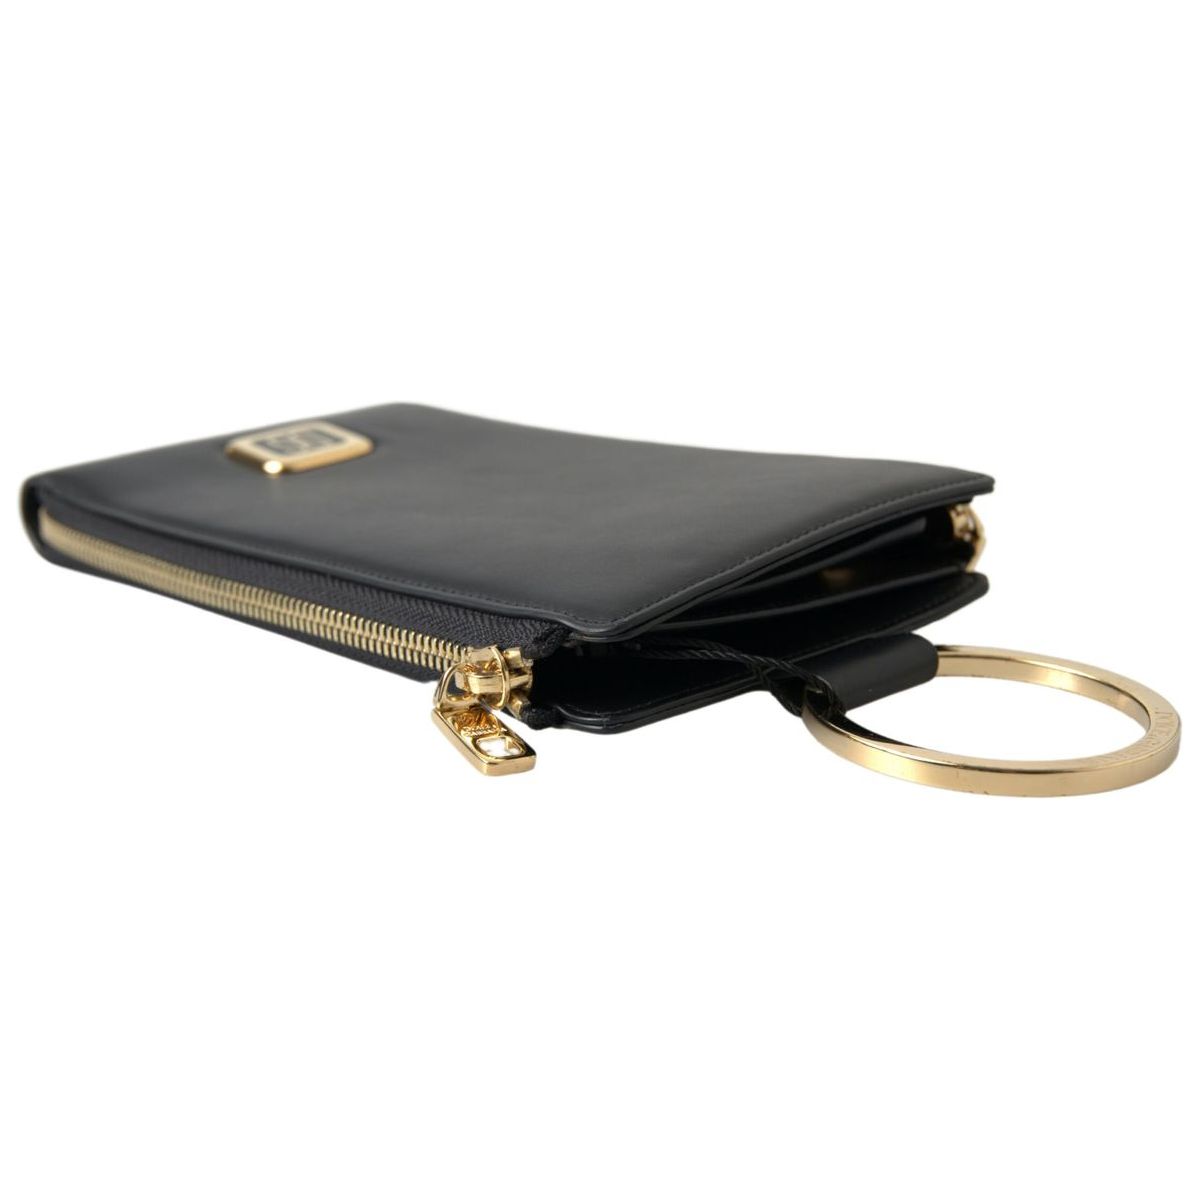 Dolce & Gabbana Elegant Black Leather Cardholder with Zip Detail black-leather-dg-logo-gold-zip-card-holder-men-wallet